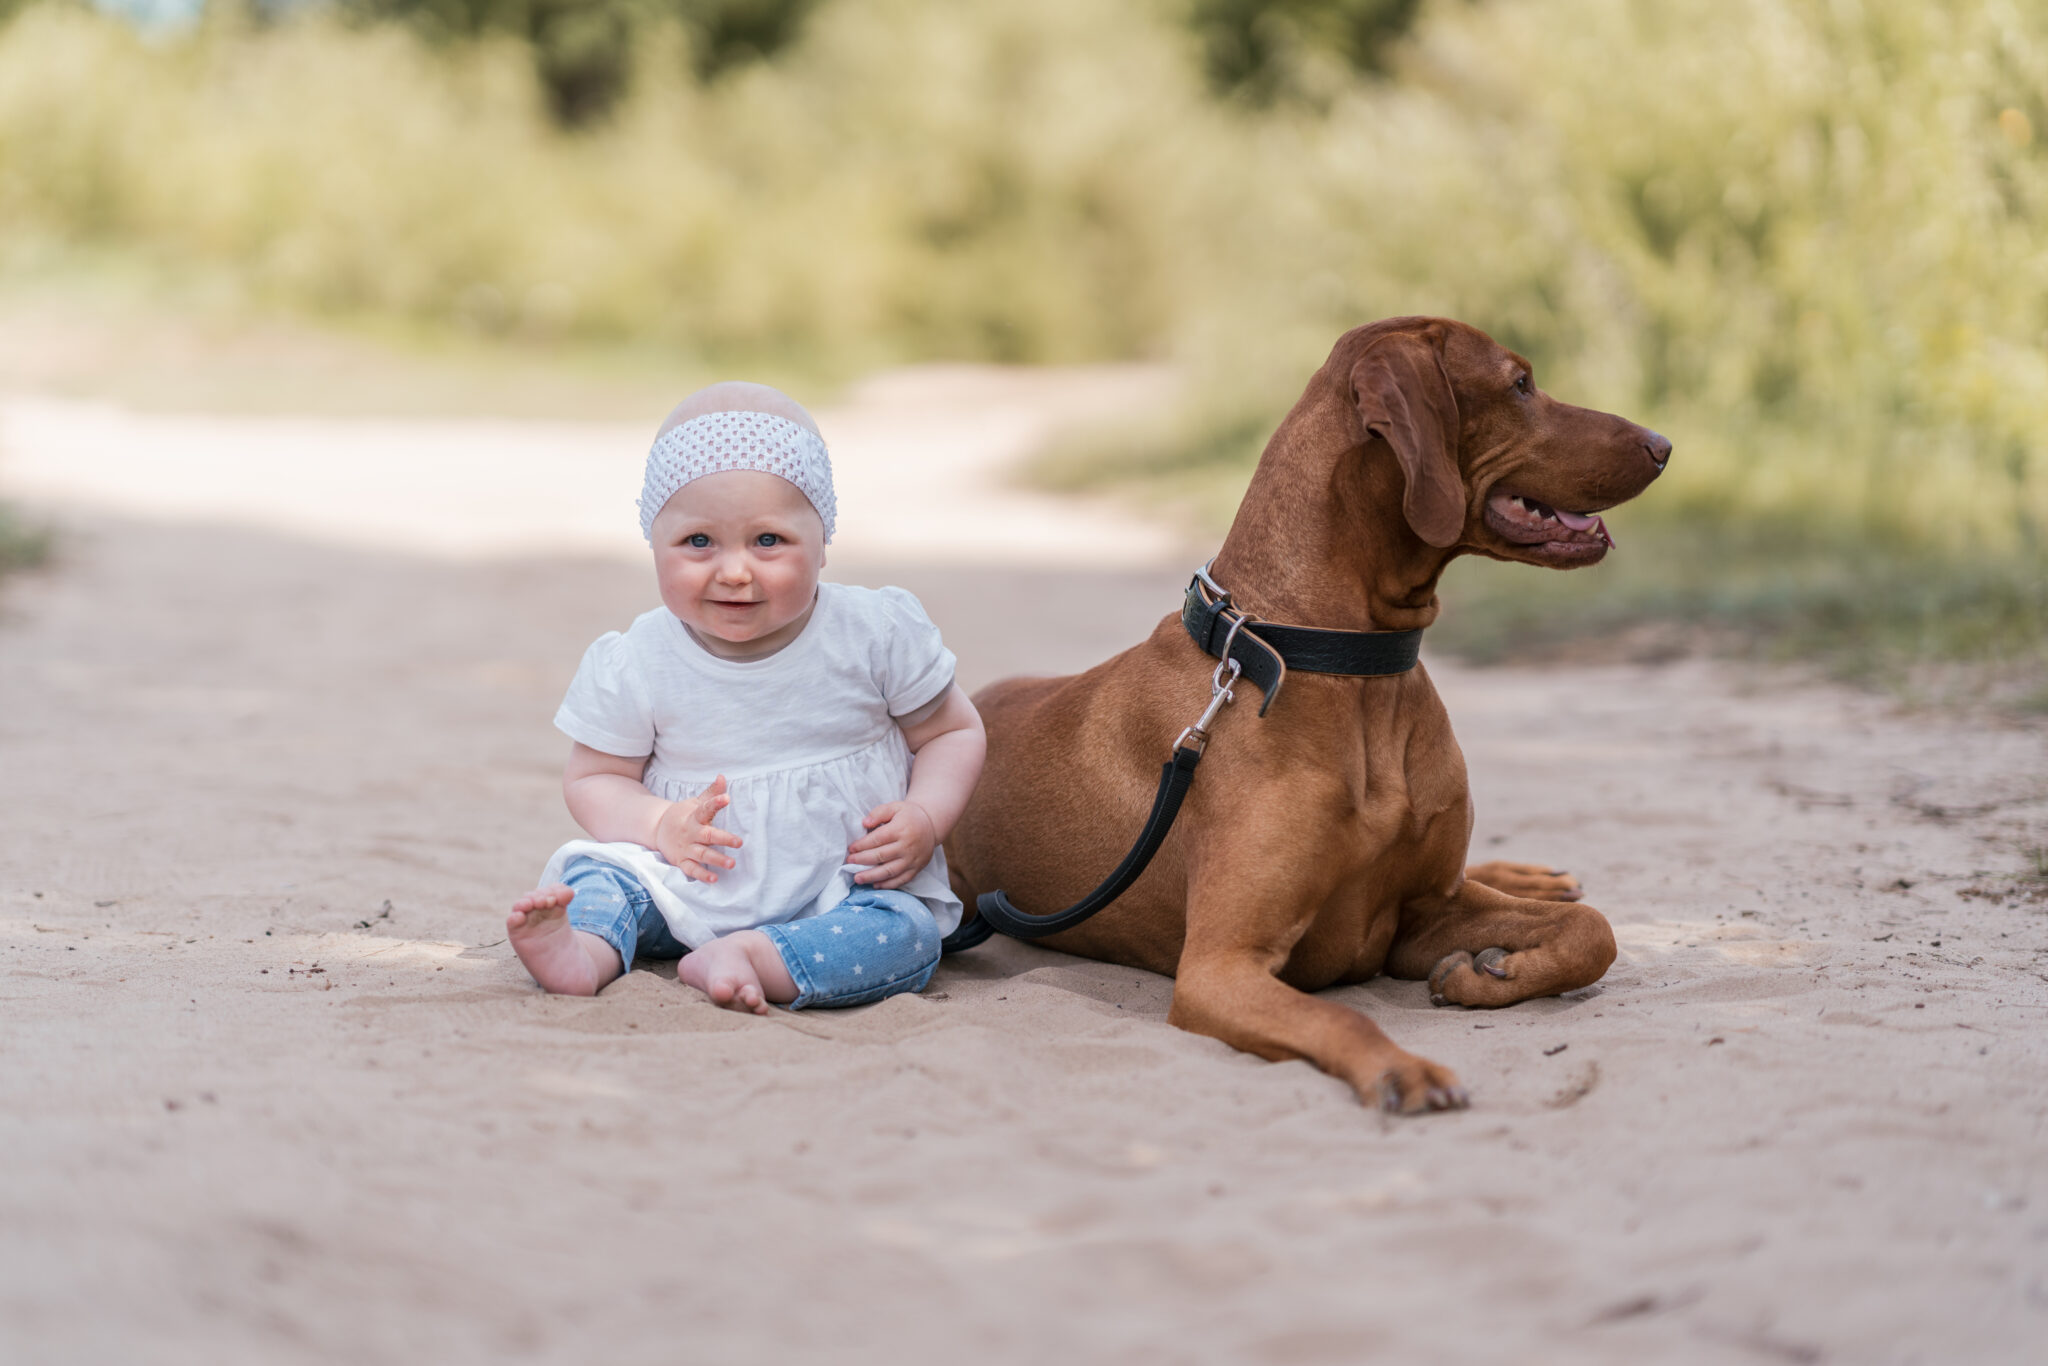 Familienshooting mit Haustier, Baby sitzt mit Haustier Hund im Sand